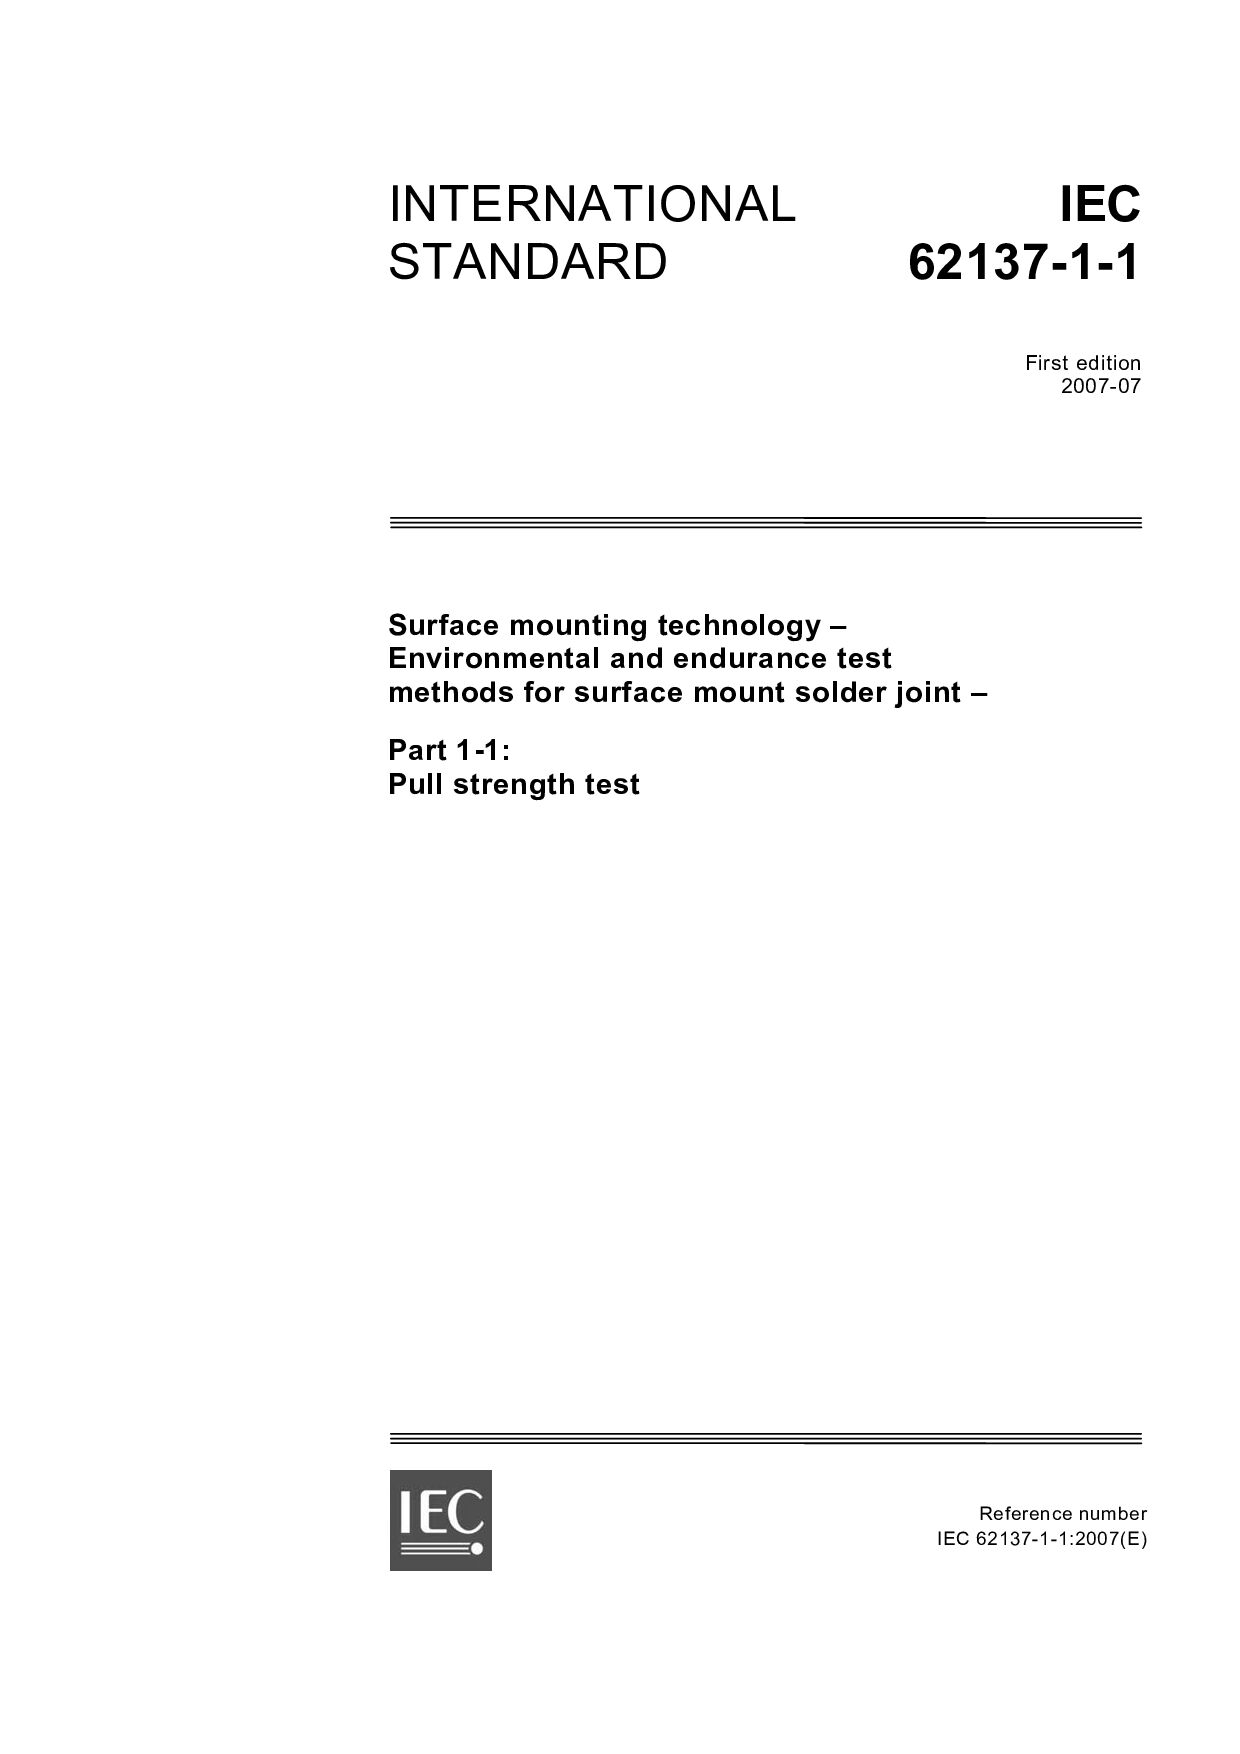 IEC 62137-1-1:2007